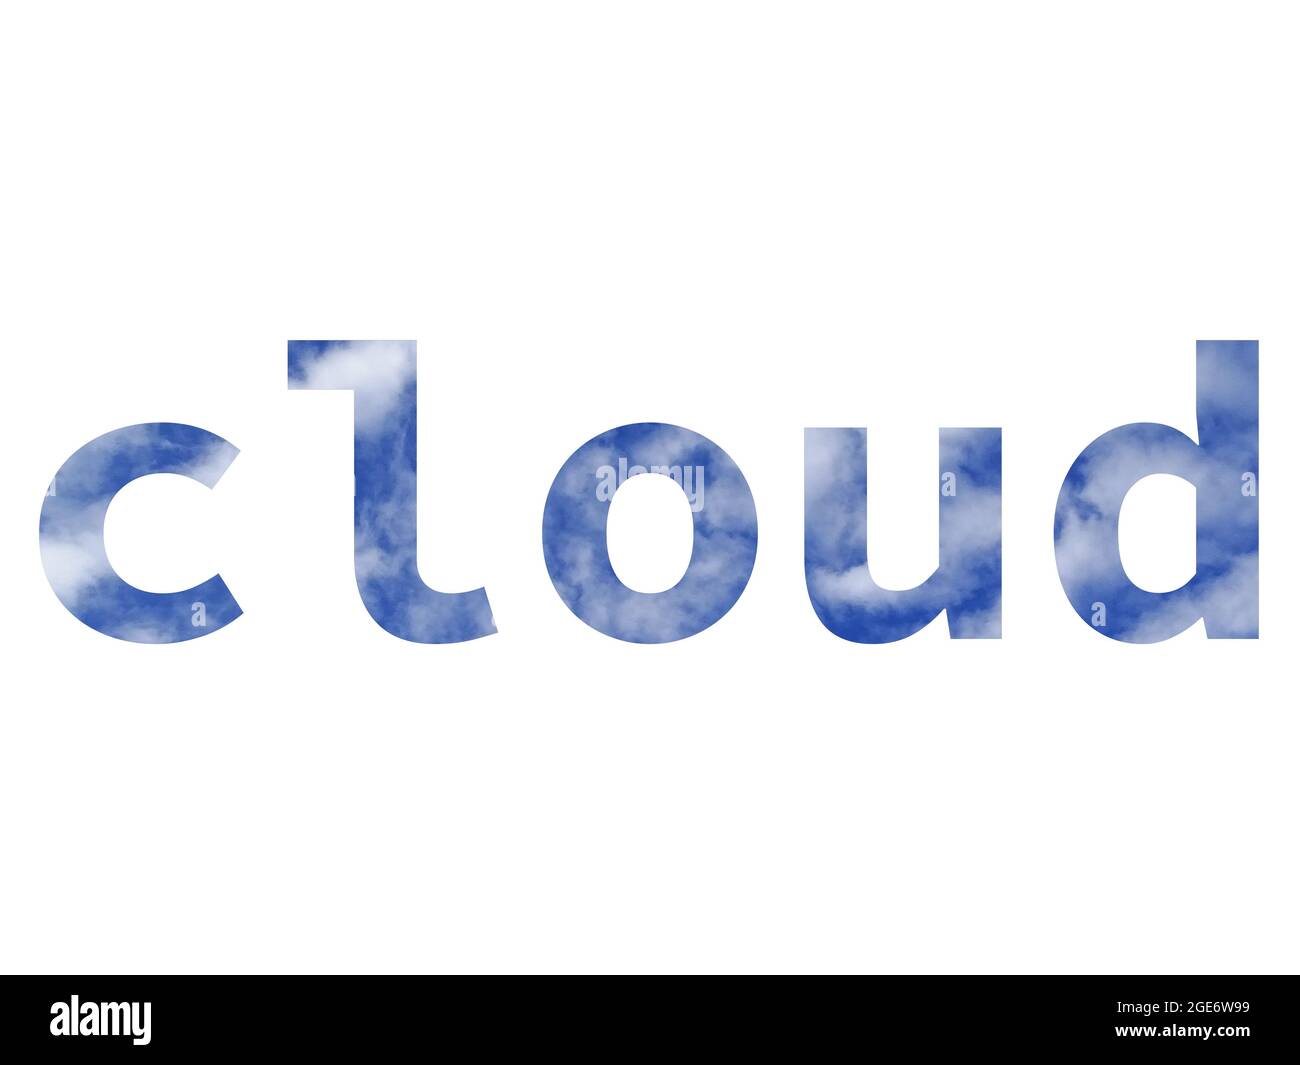 nuvola, testo fatto con lettere dell'alfabeto fatto con un cielo blu e nuvole bianche, isolato su uno sfondo bianco Foto Stock